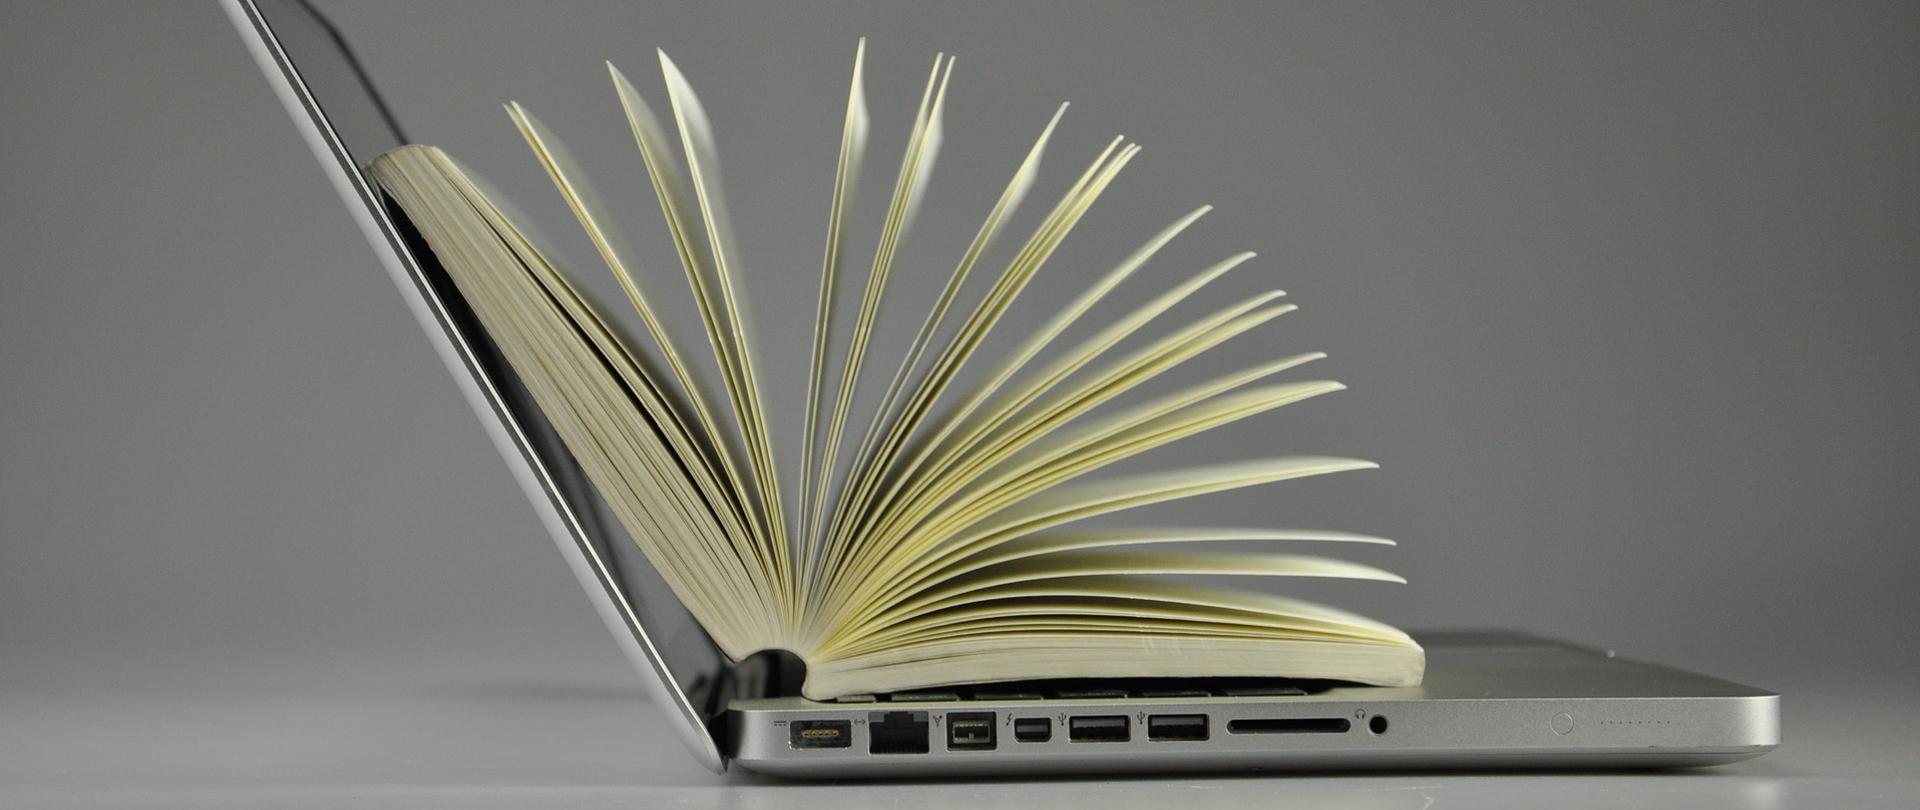 Na zdjęciu znajduje się laptop, na którym leży otwarta książka.